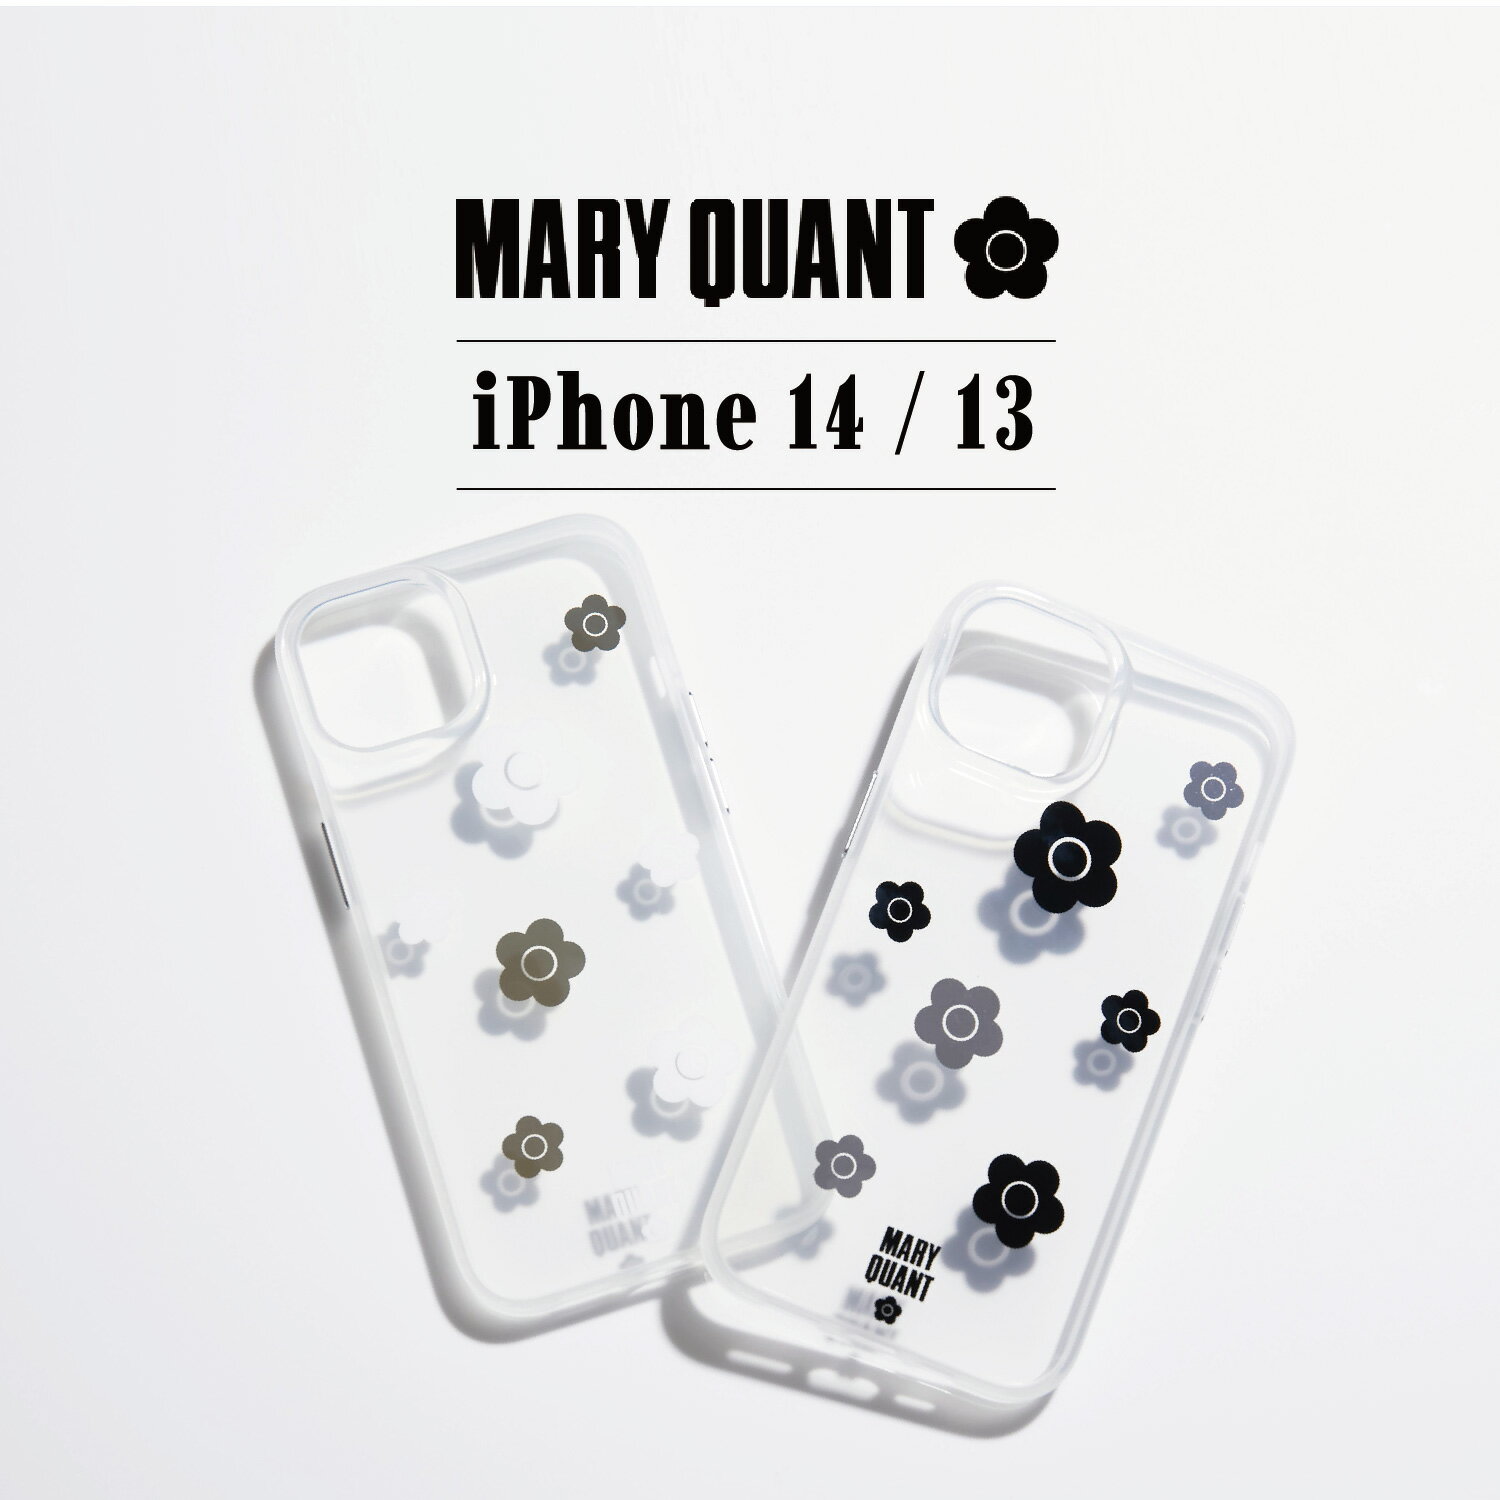 マリークヮント スマホケース レディース MARY QUANT マリークヮント iPhone 14 13 スマホケース 携帯 アイフォン レディース クリア 透明 マリクワ RANDOM DAISY HYBRID CLEAR CASE ブラック ホワイト 黒 白 IP14-MQ11-12 母の日